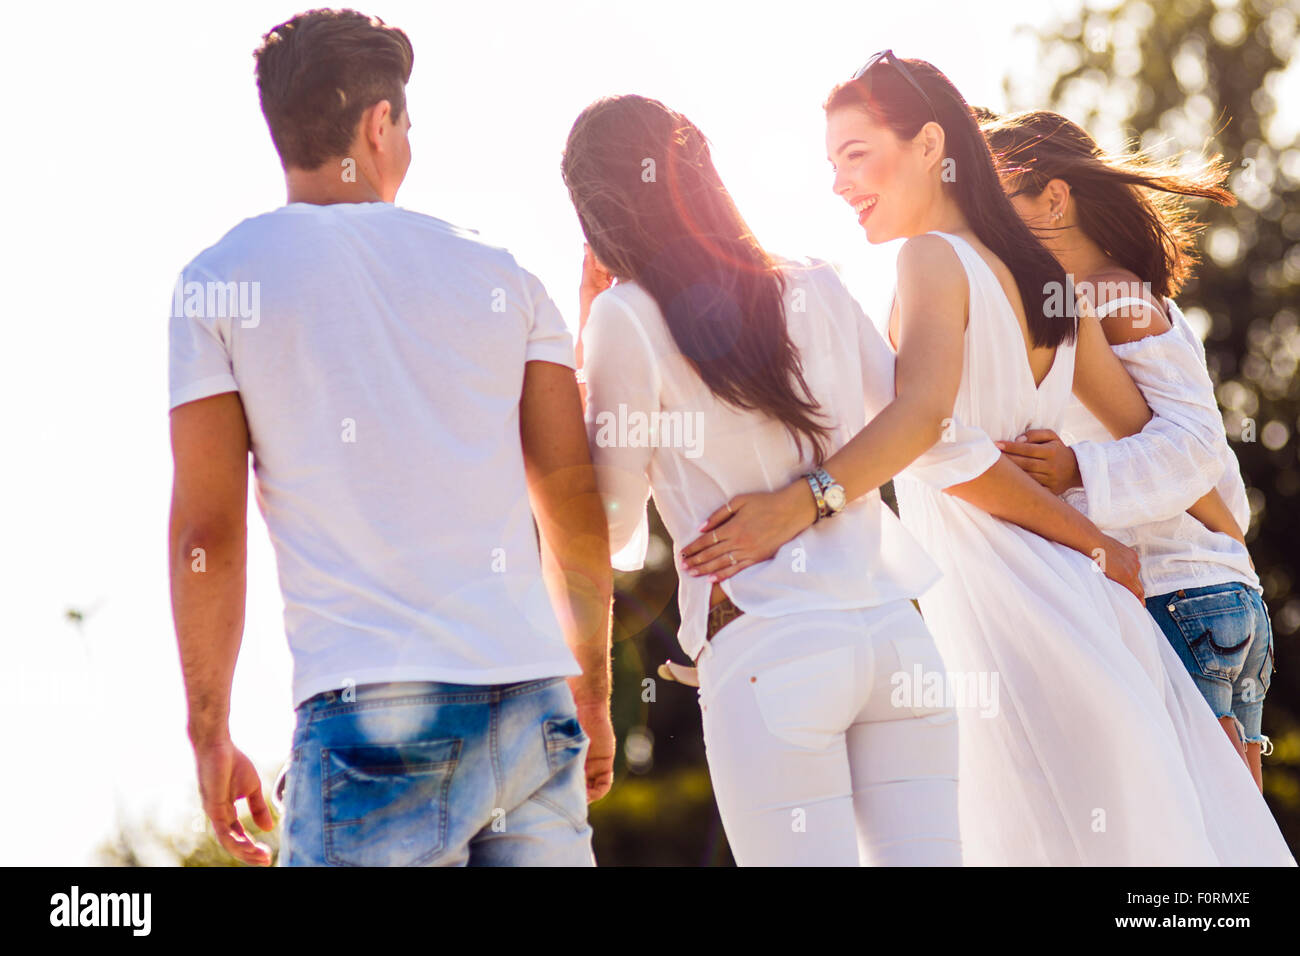 Groupe de jeunes holding hands on beach en signe d'amitié Banque D'Images